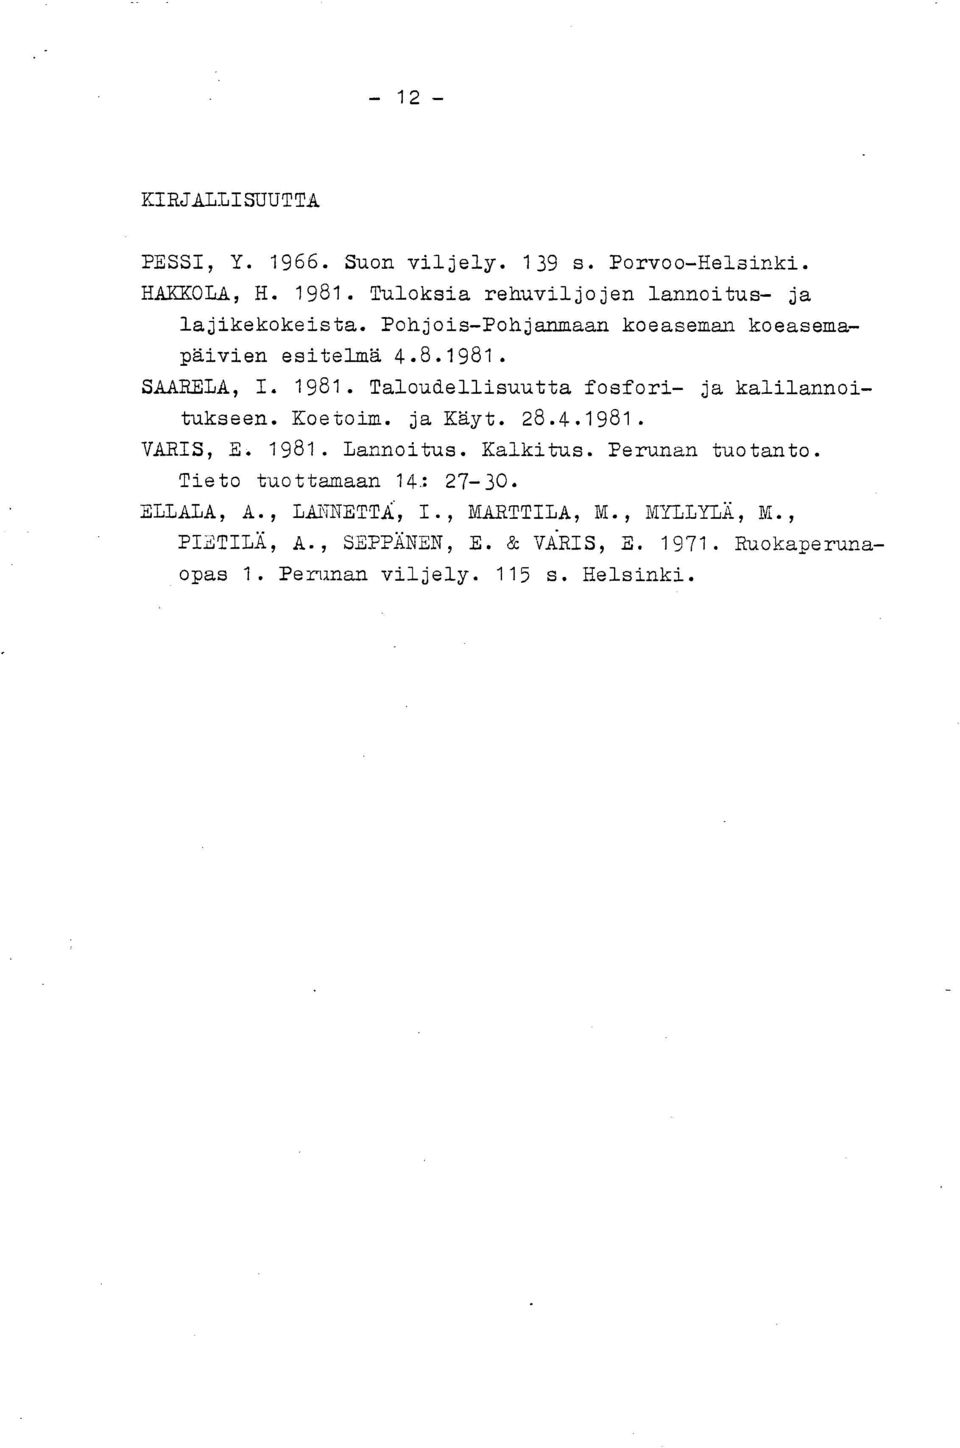 Taloudellisuutta fosfori- ja kalilannoitukseen. Koetoim. ja Käyt. 28.4.1981. VARIS, E. 1981. Lannoitus. Kalkitus. Perunan tuotanto.